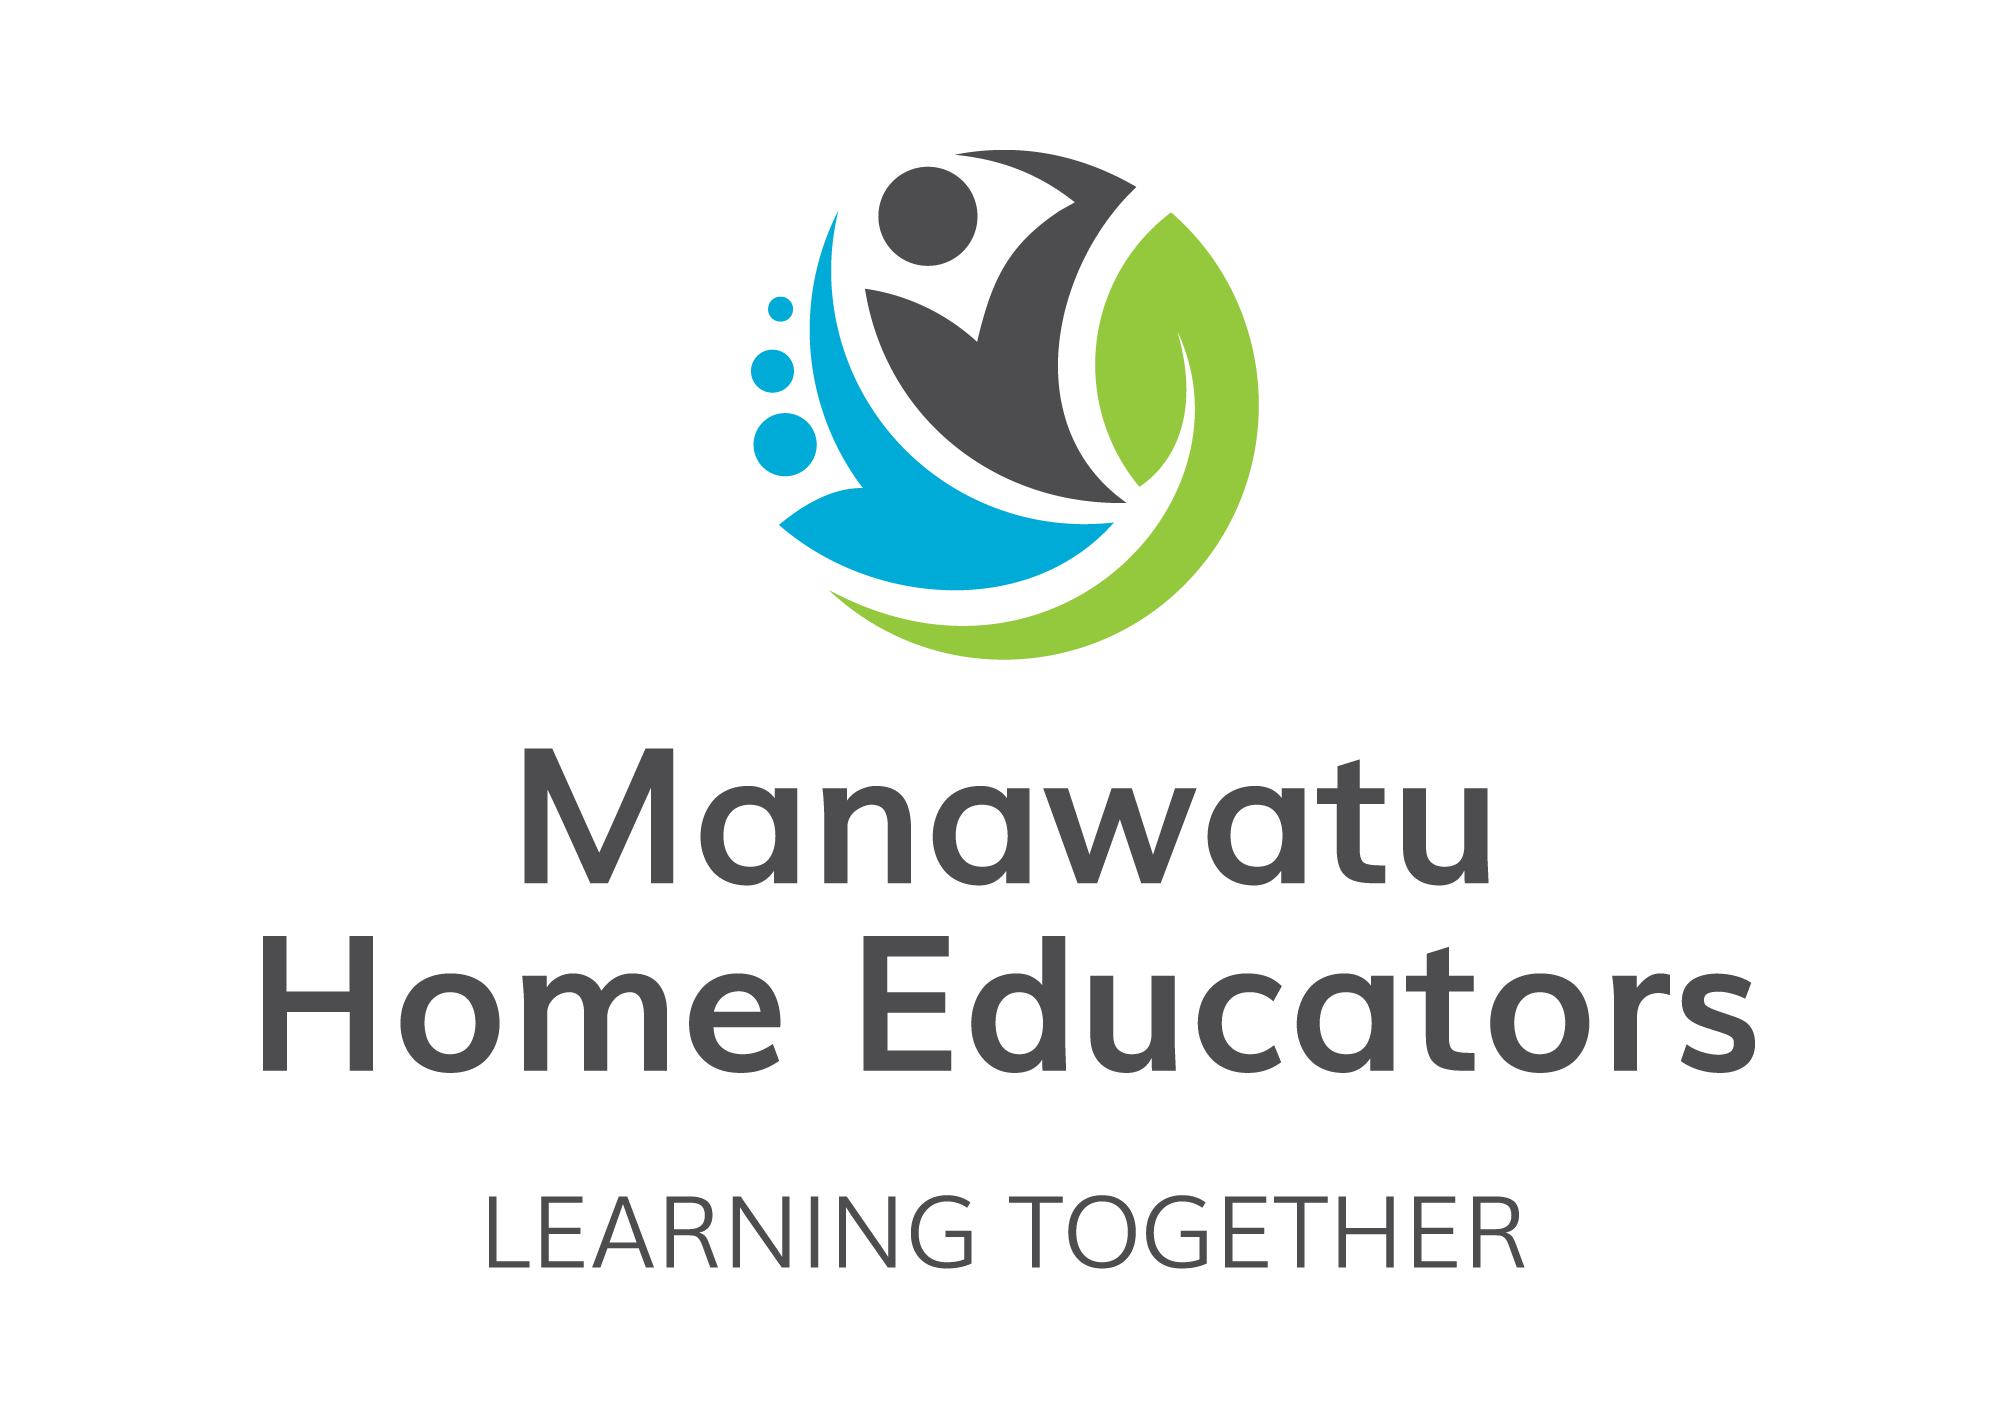 Manawatu Home Educators